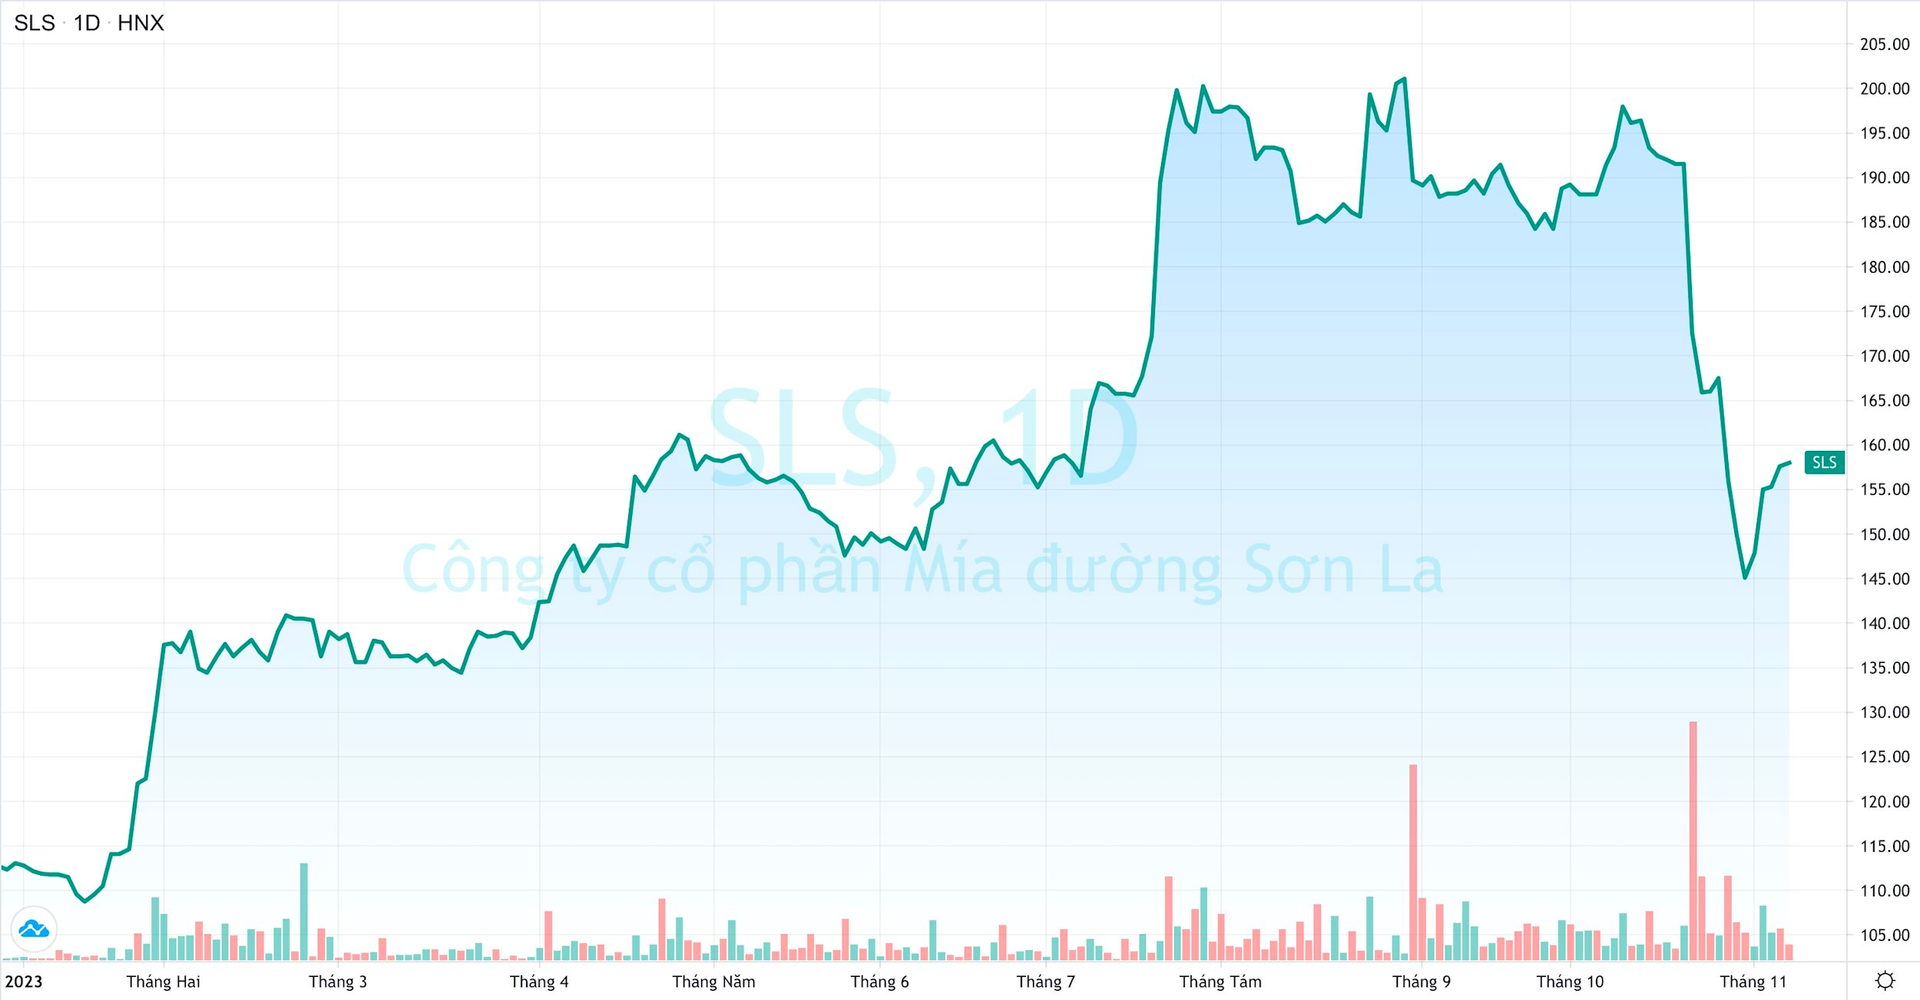 Lãi lớn, cổ tức “khủng”, vì sao cổ phiếu Mía đường Sơn La (SLS) vẫn giảm mạnh? - Ảnh 1.